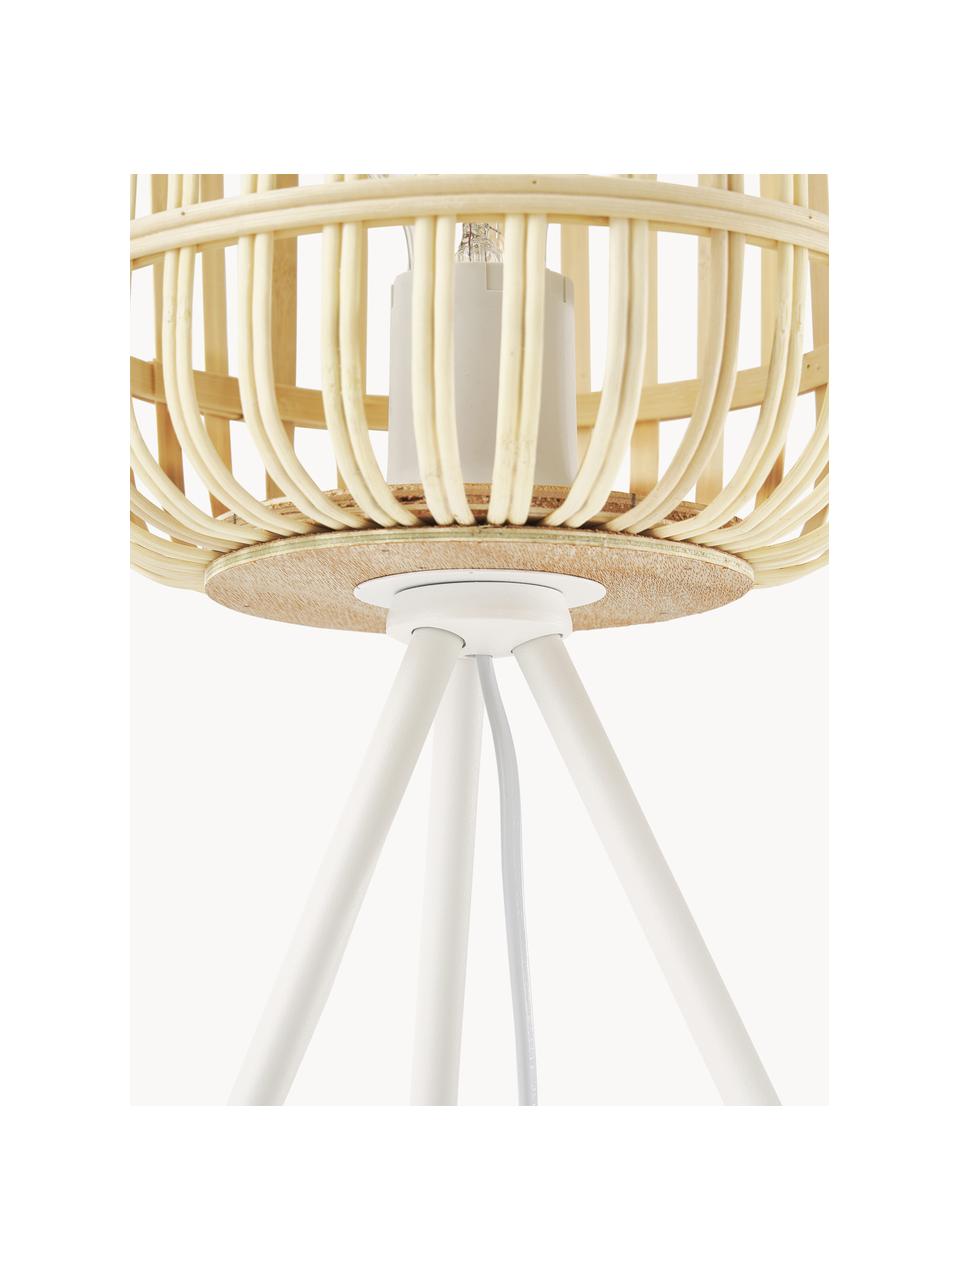 Tripod Tischlampe Adam aus Bambus, Lampenschirm: Bambus, Lampenfuß: Metall, pulverbeschichtet, Beige, Weiß, Ø 21 x H 42 cm